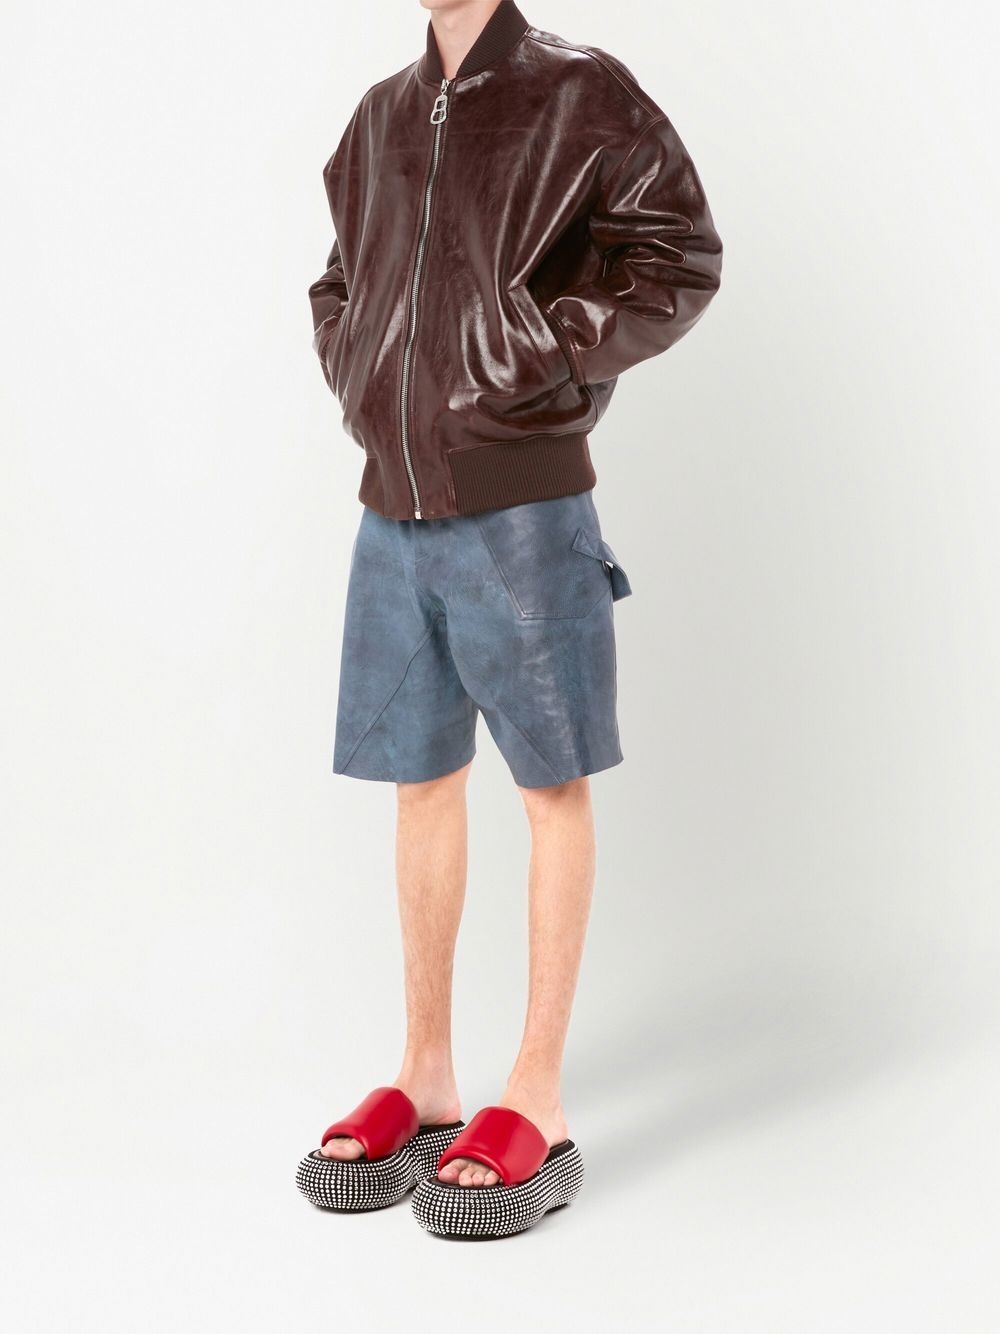 leather bomber jacket - 2